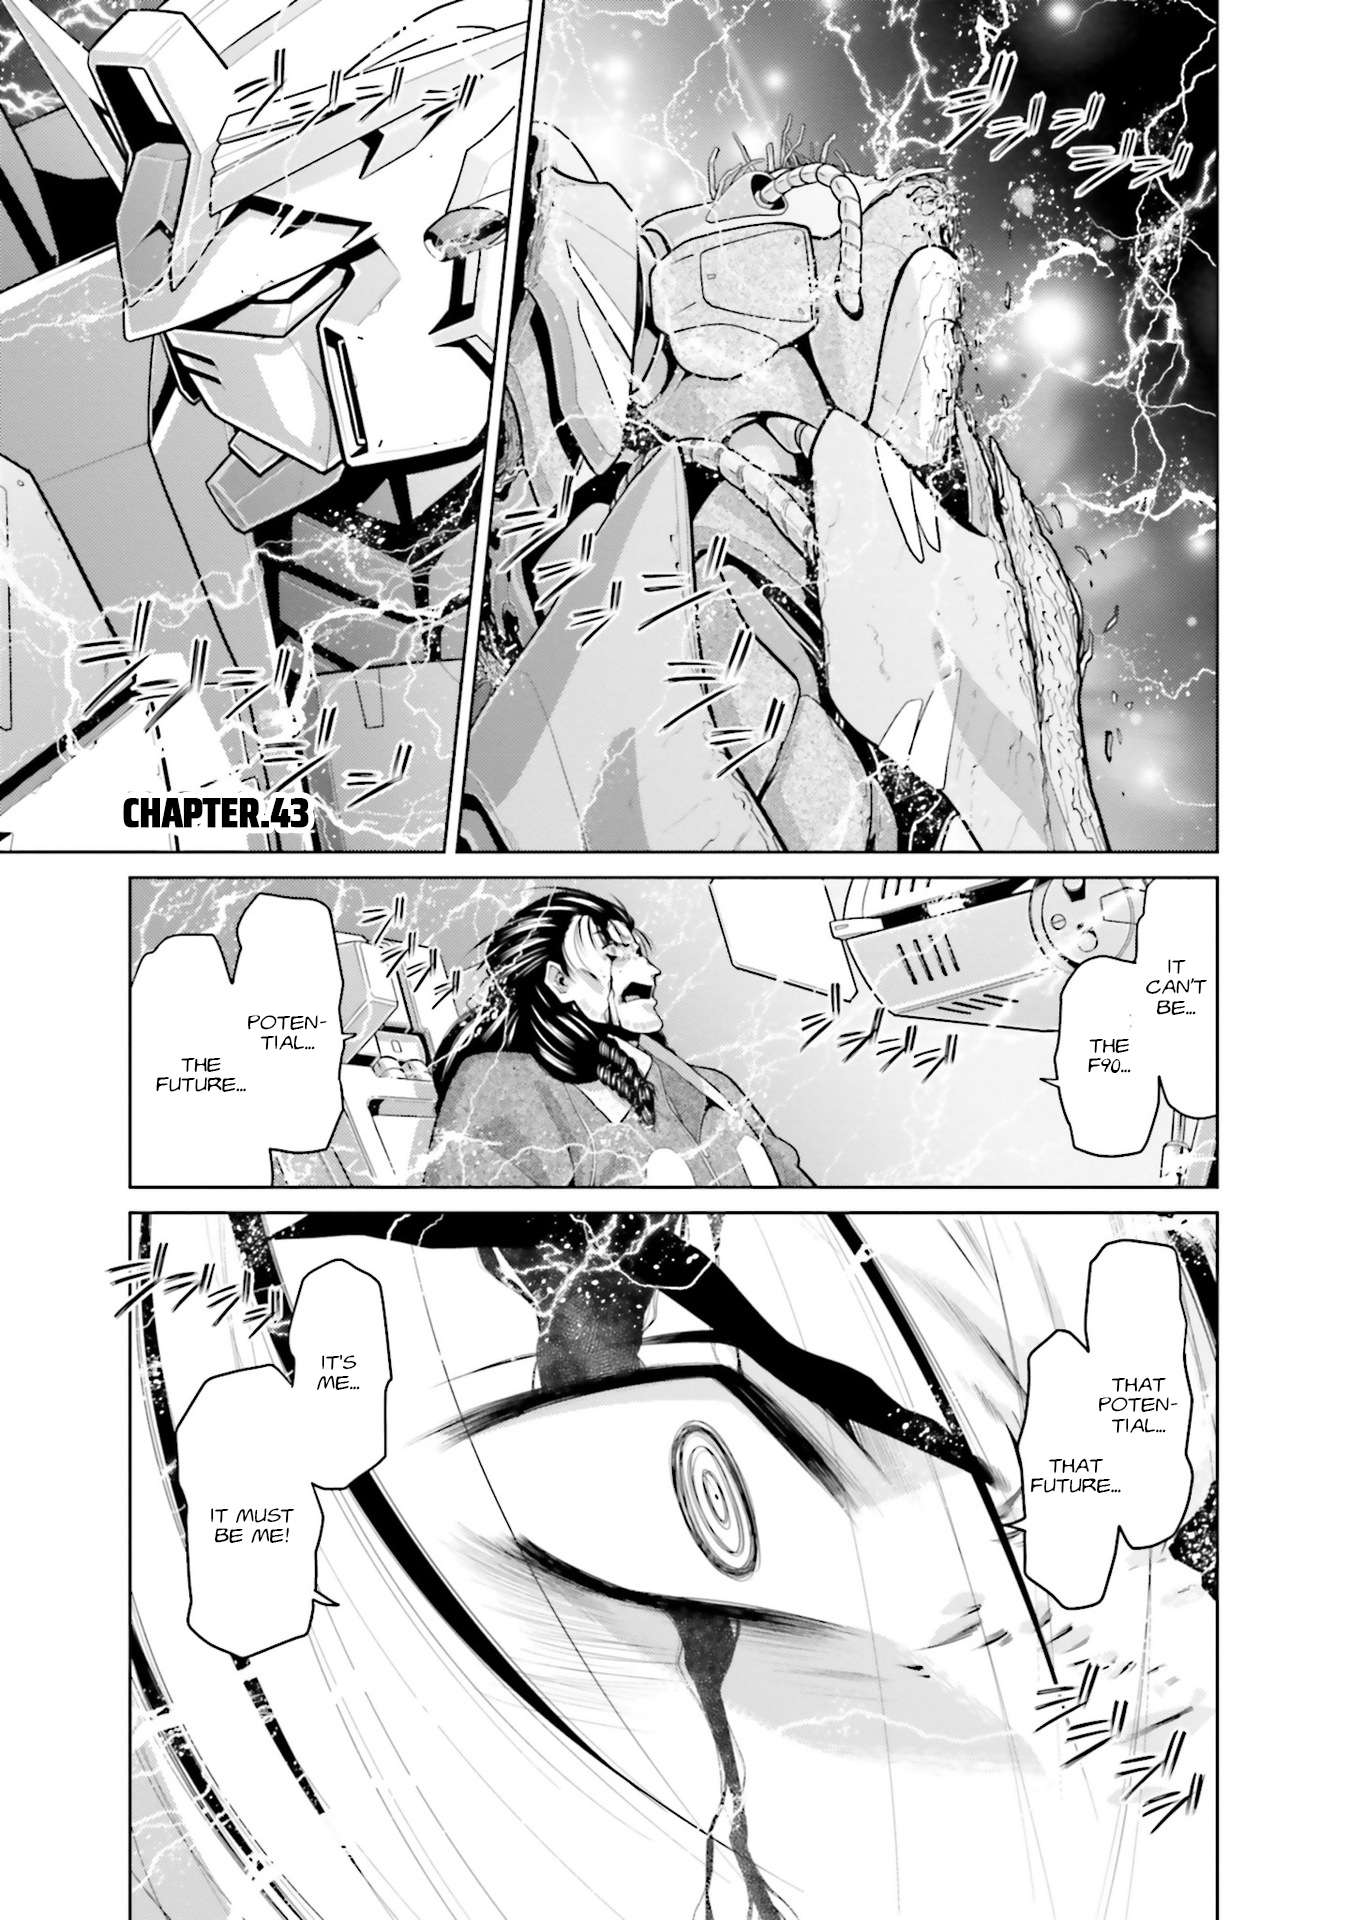 Kidou Senshi Gundam F90 FF - chapter 43 - #1